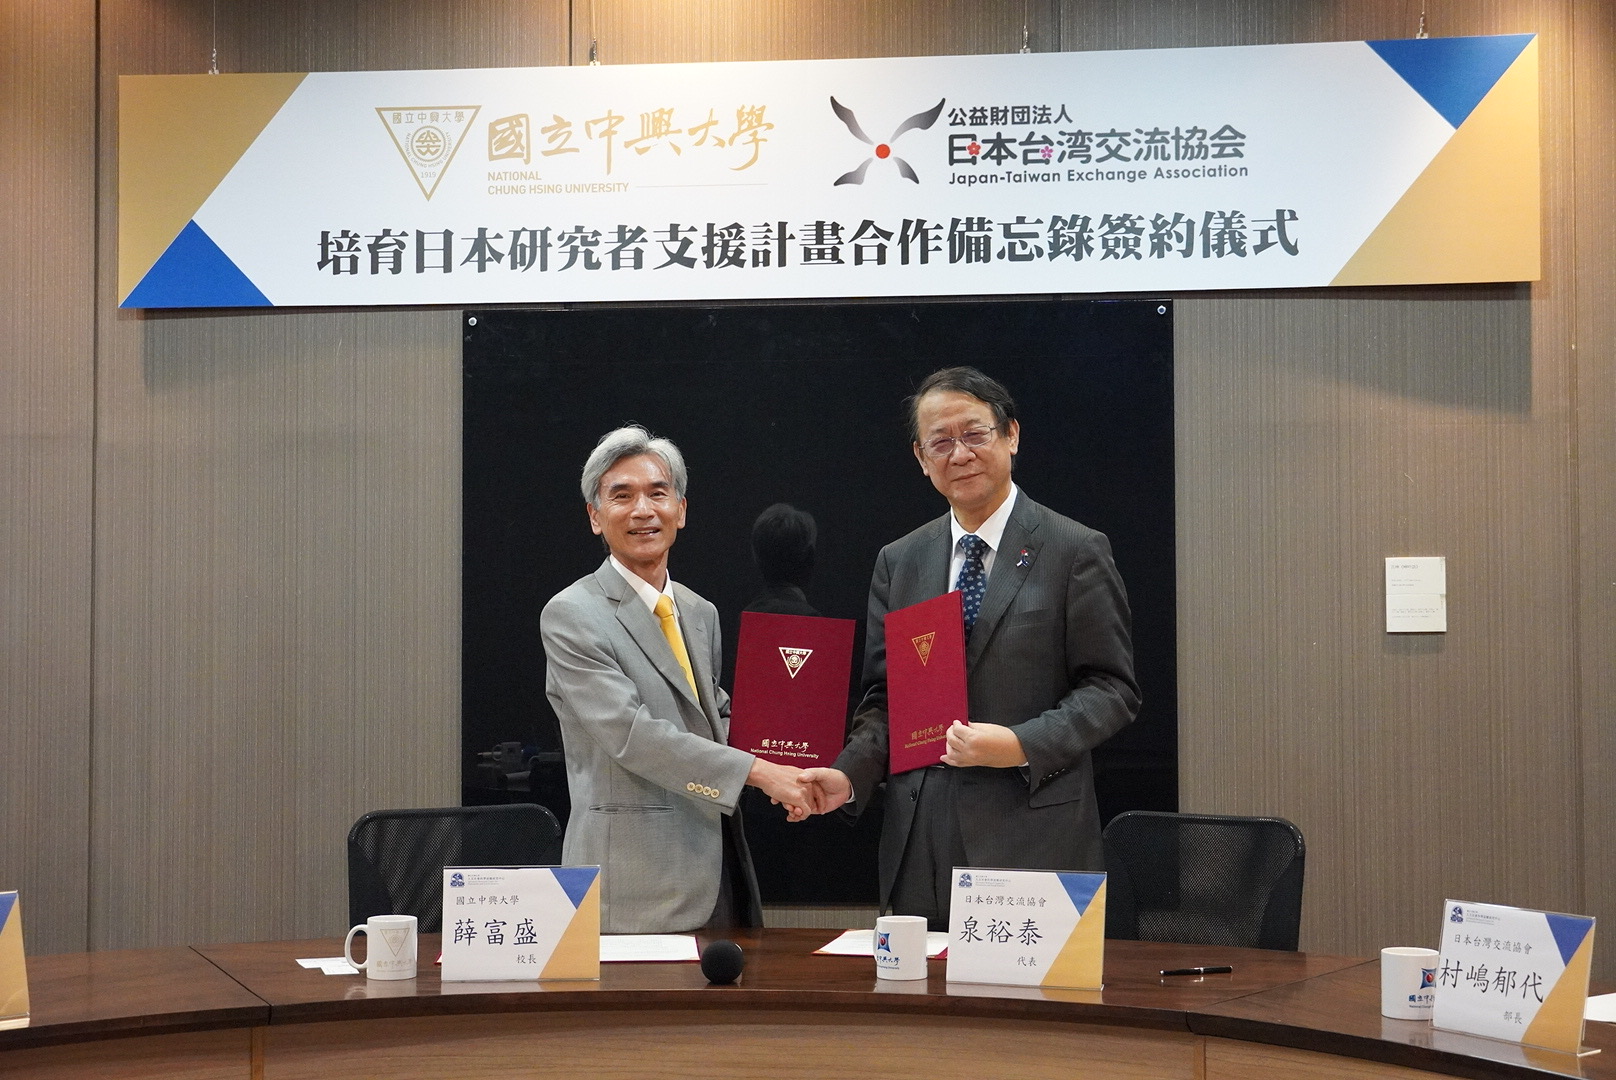 本協會與國立中興大學簽署「培育日本研究者支援計畫合作備忘錄」